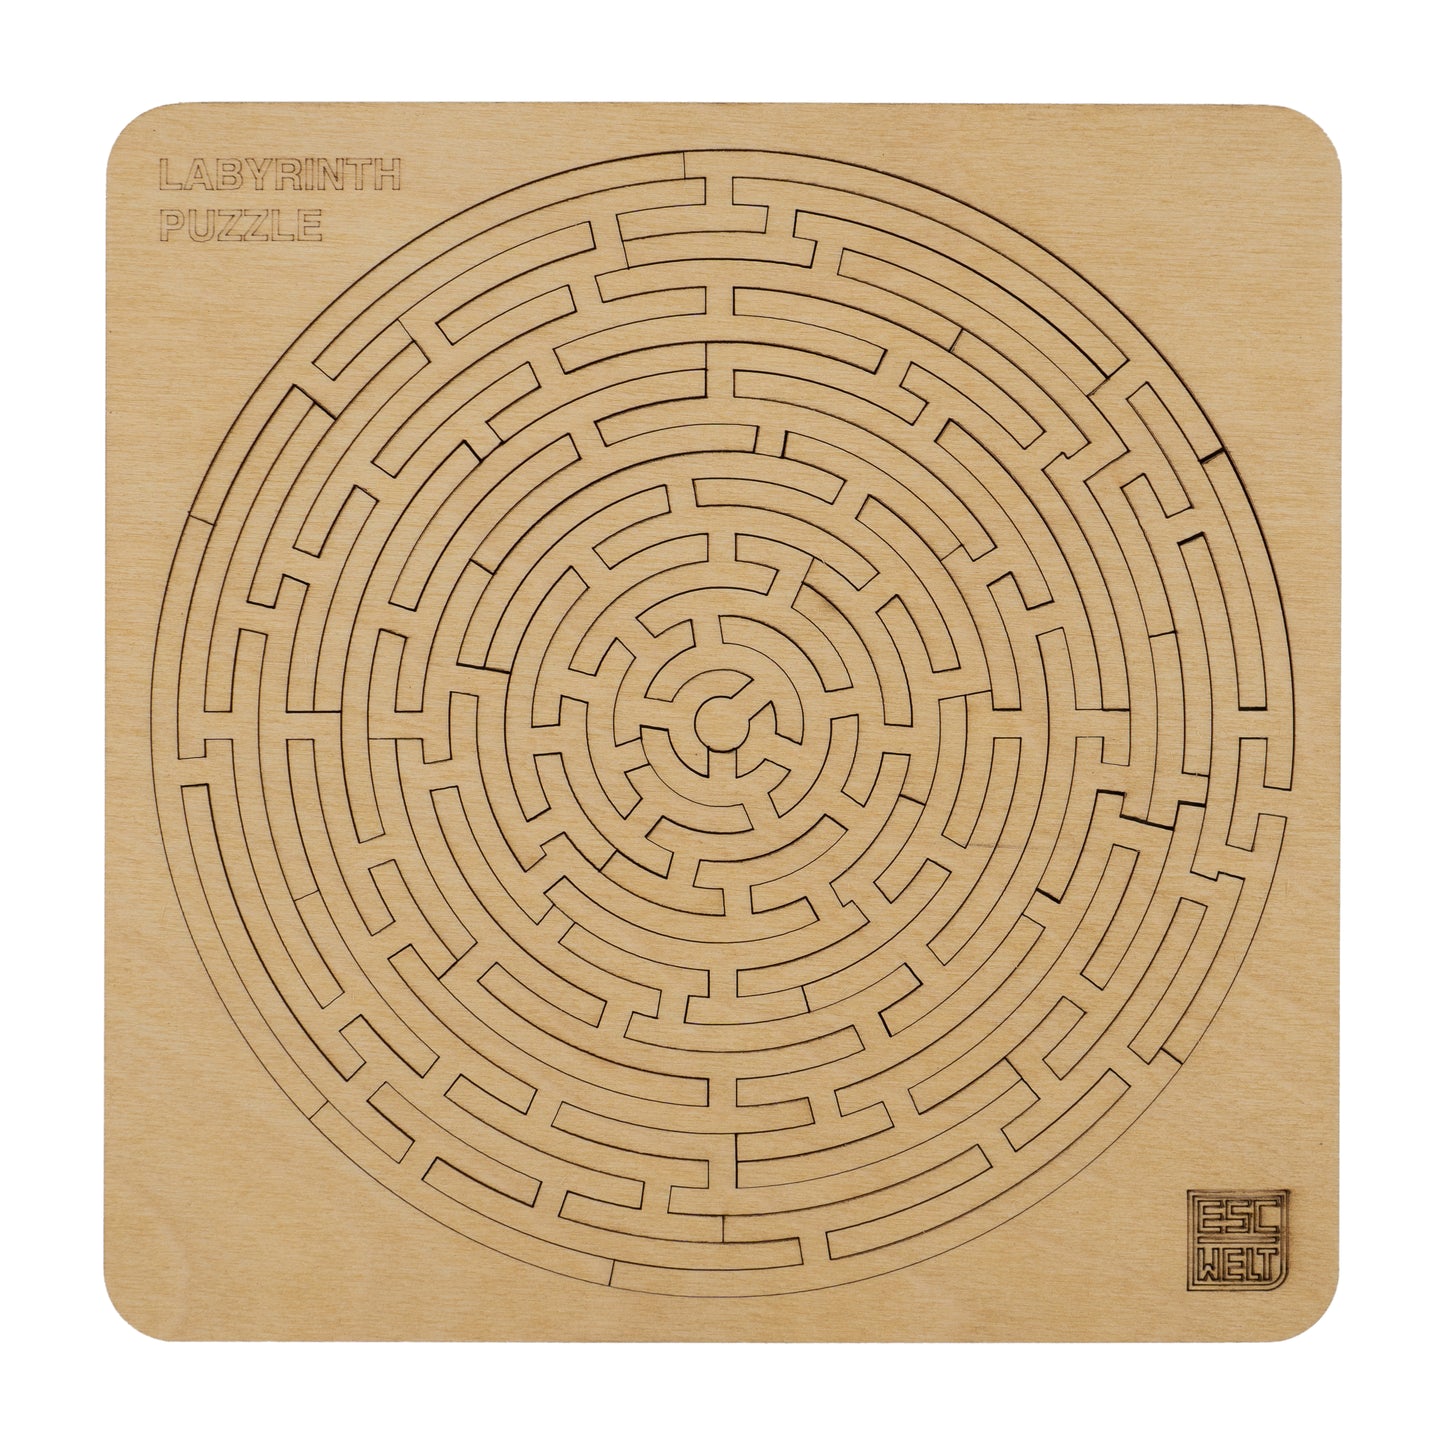 Labyrinth Puzzle escape welt